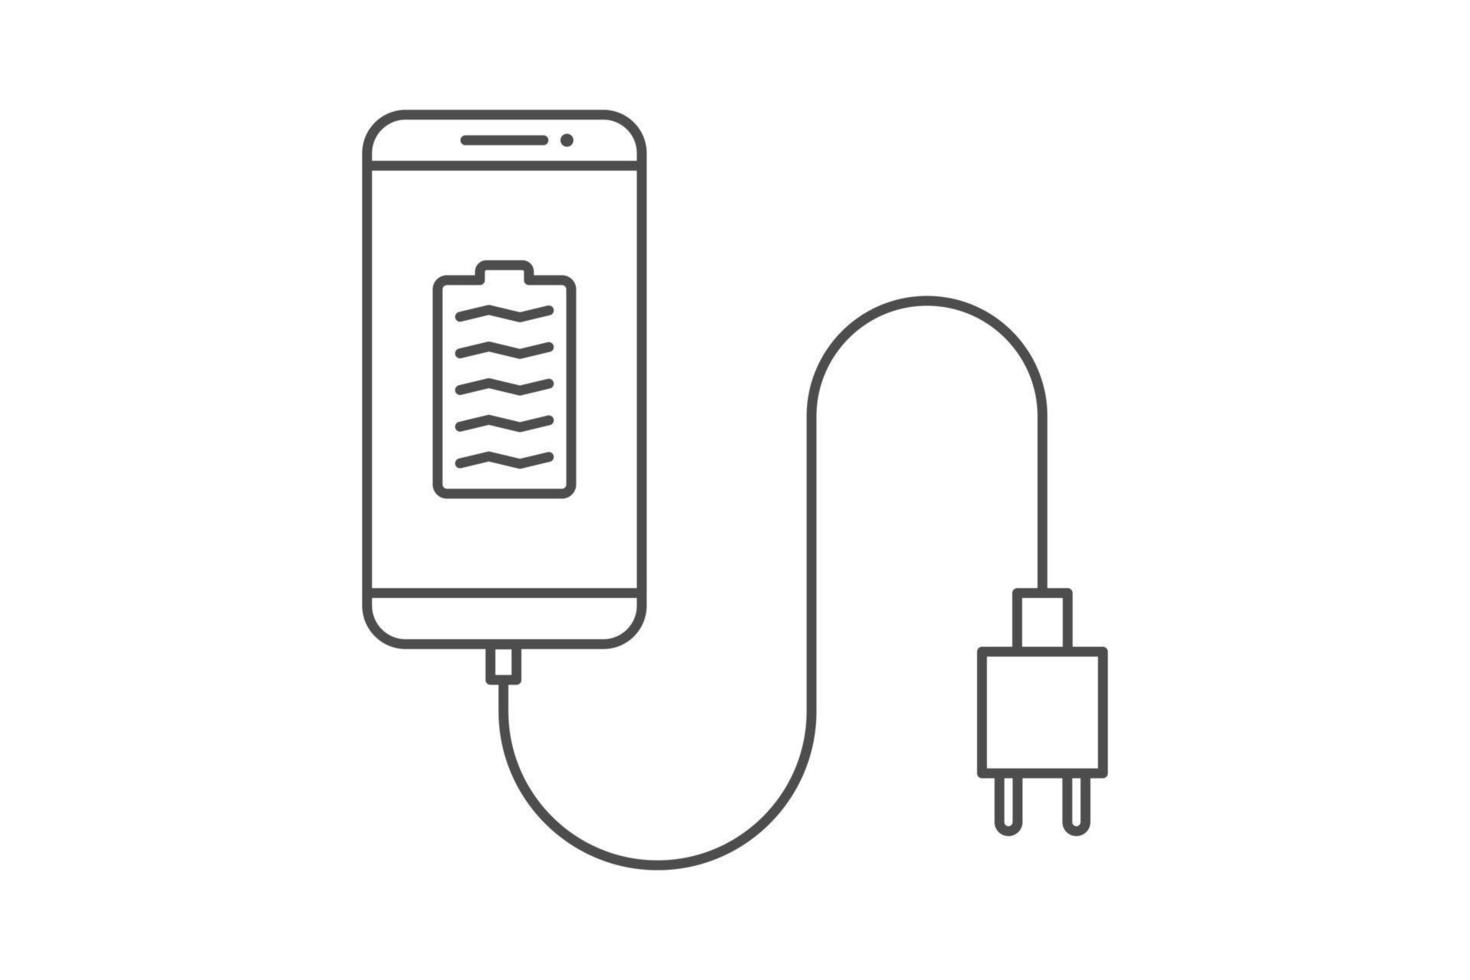 Smartphone carregador adaptador linha ícone placa símbolo vetor, Smartphone, elétrico soquete, adaptador, cheio bateria notificação vetor